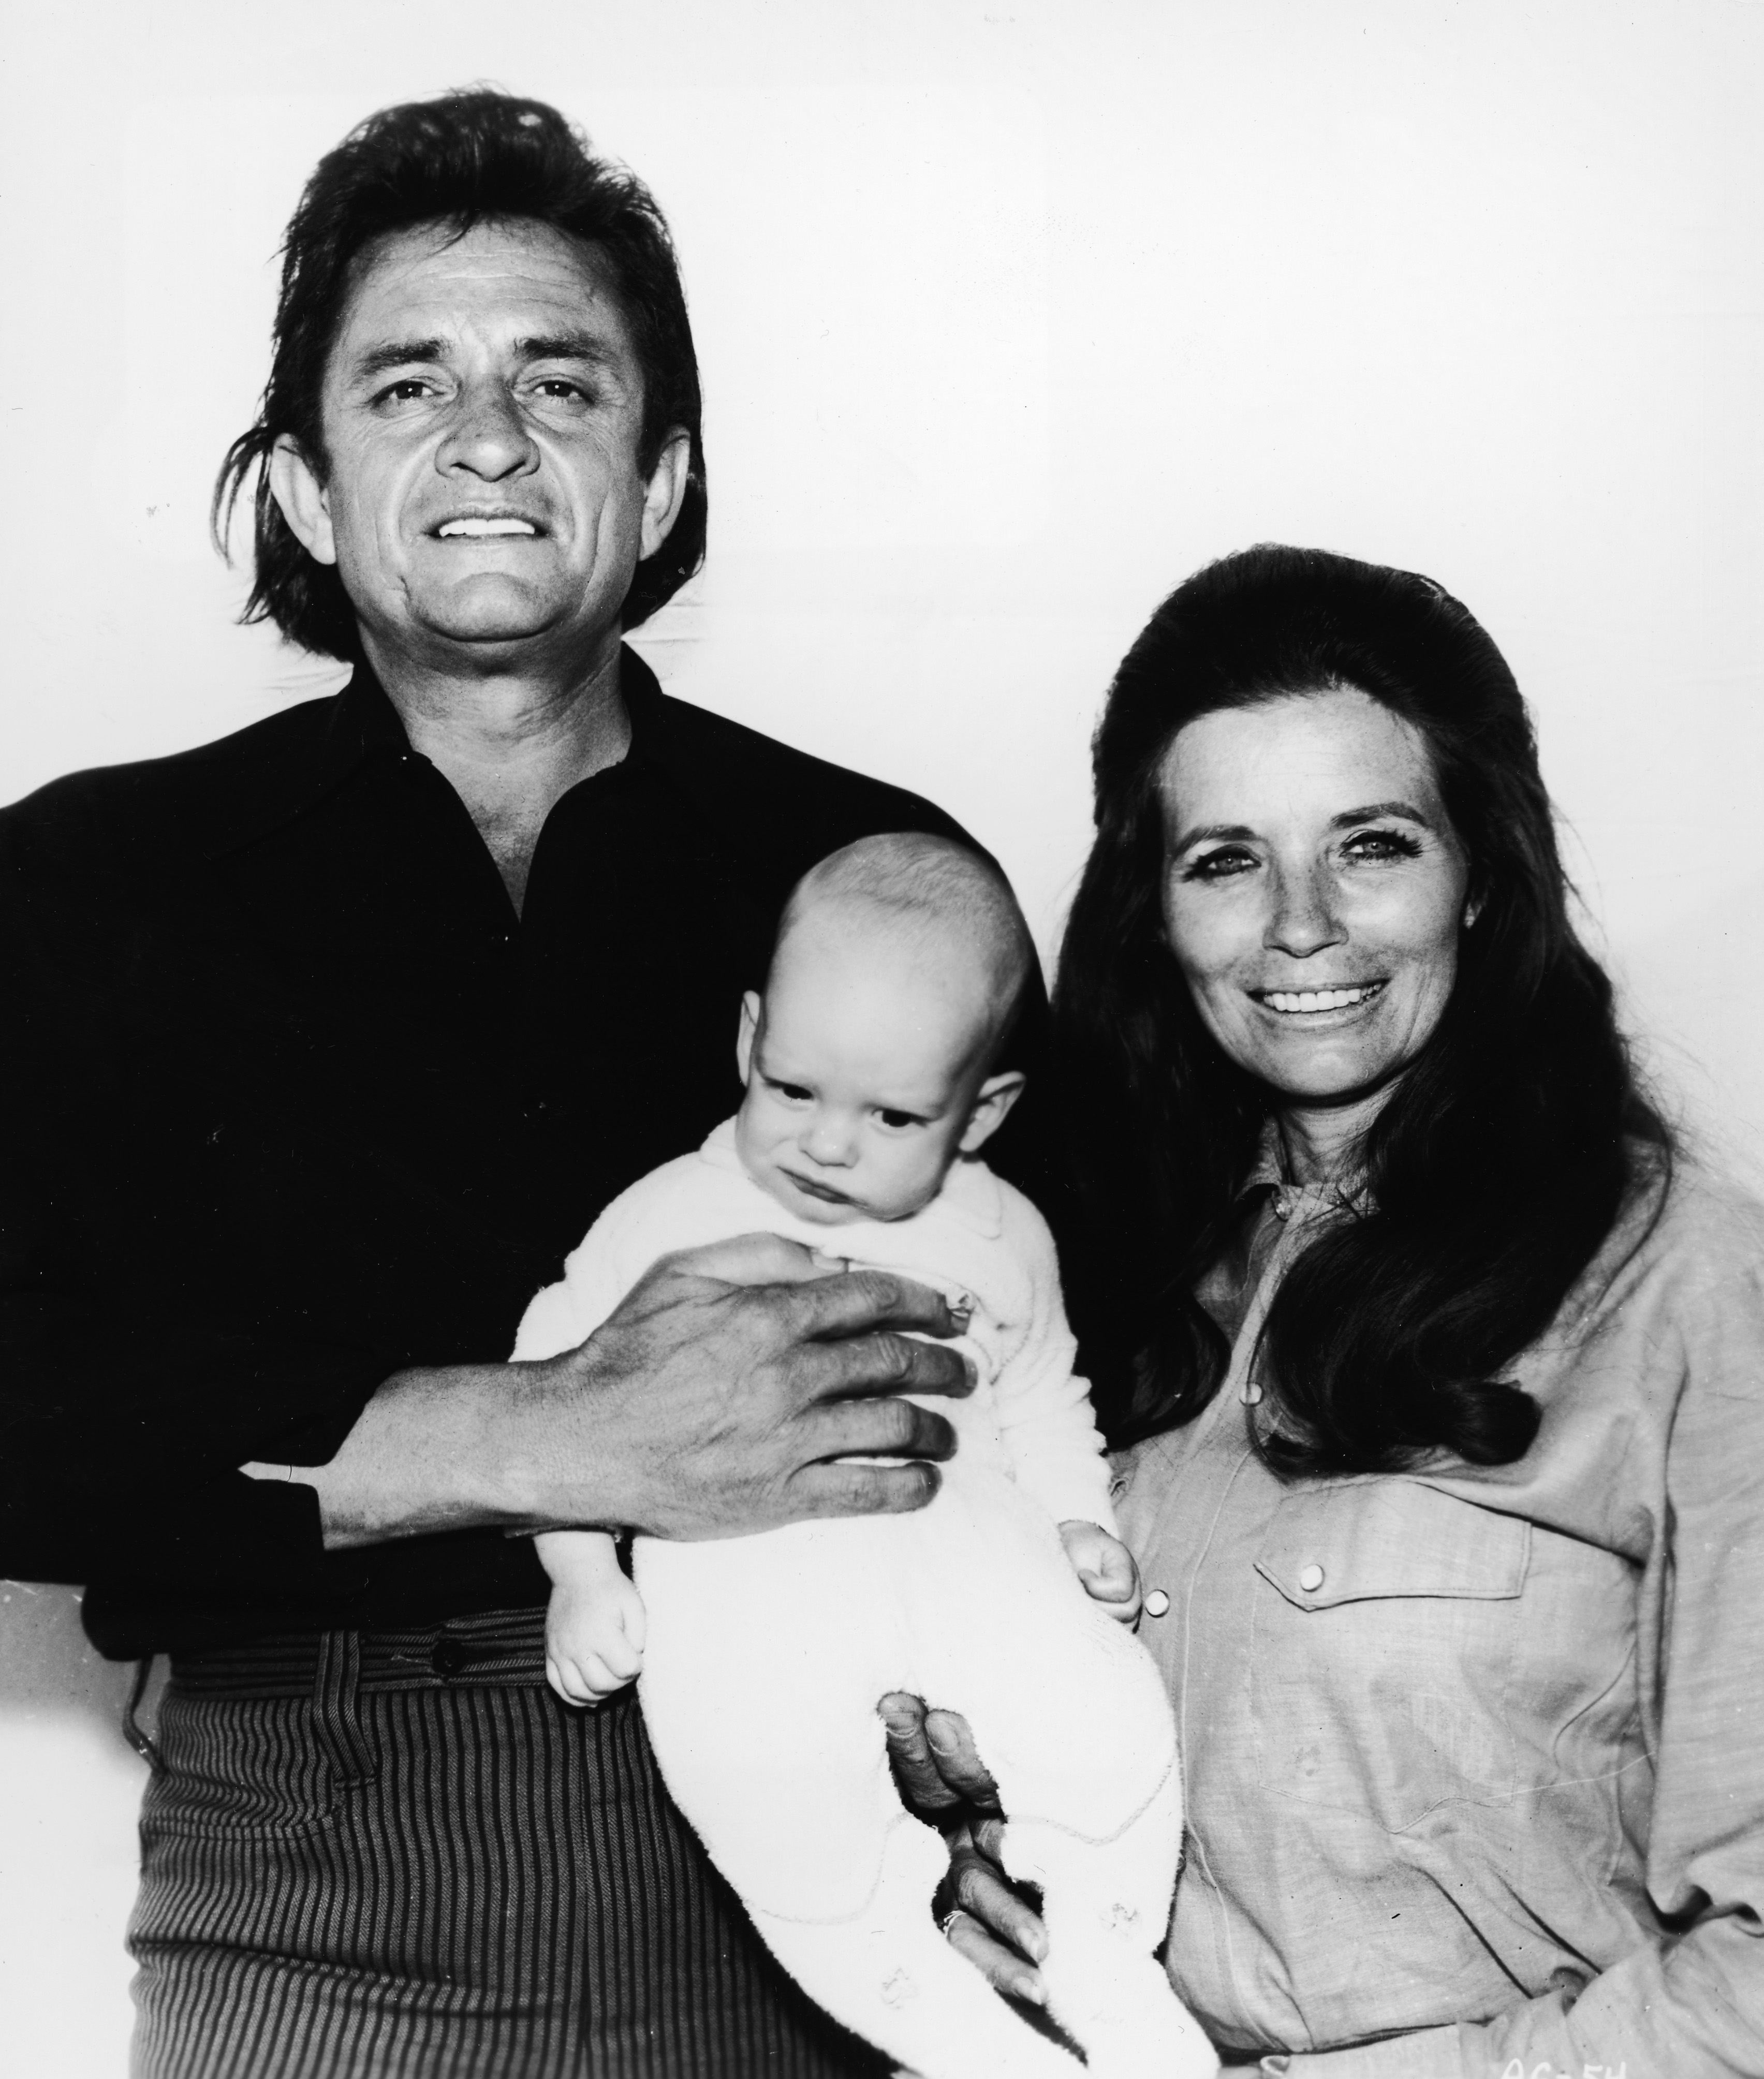 1968 г. Джони Кеш и Джун Картър - едно от най-уважаваните семейства в музикалната индустрия. През 1968 г. Кеш предлага брак на Джун на сцената, по време на концерт. Новината се превръща в истинска сензация в тогавашната преса.